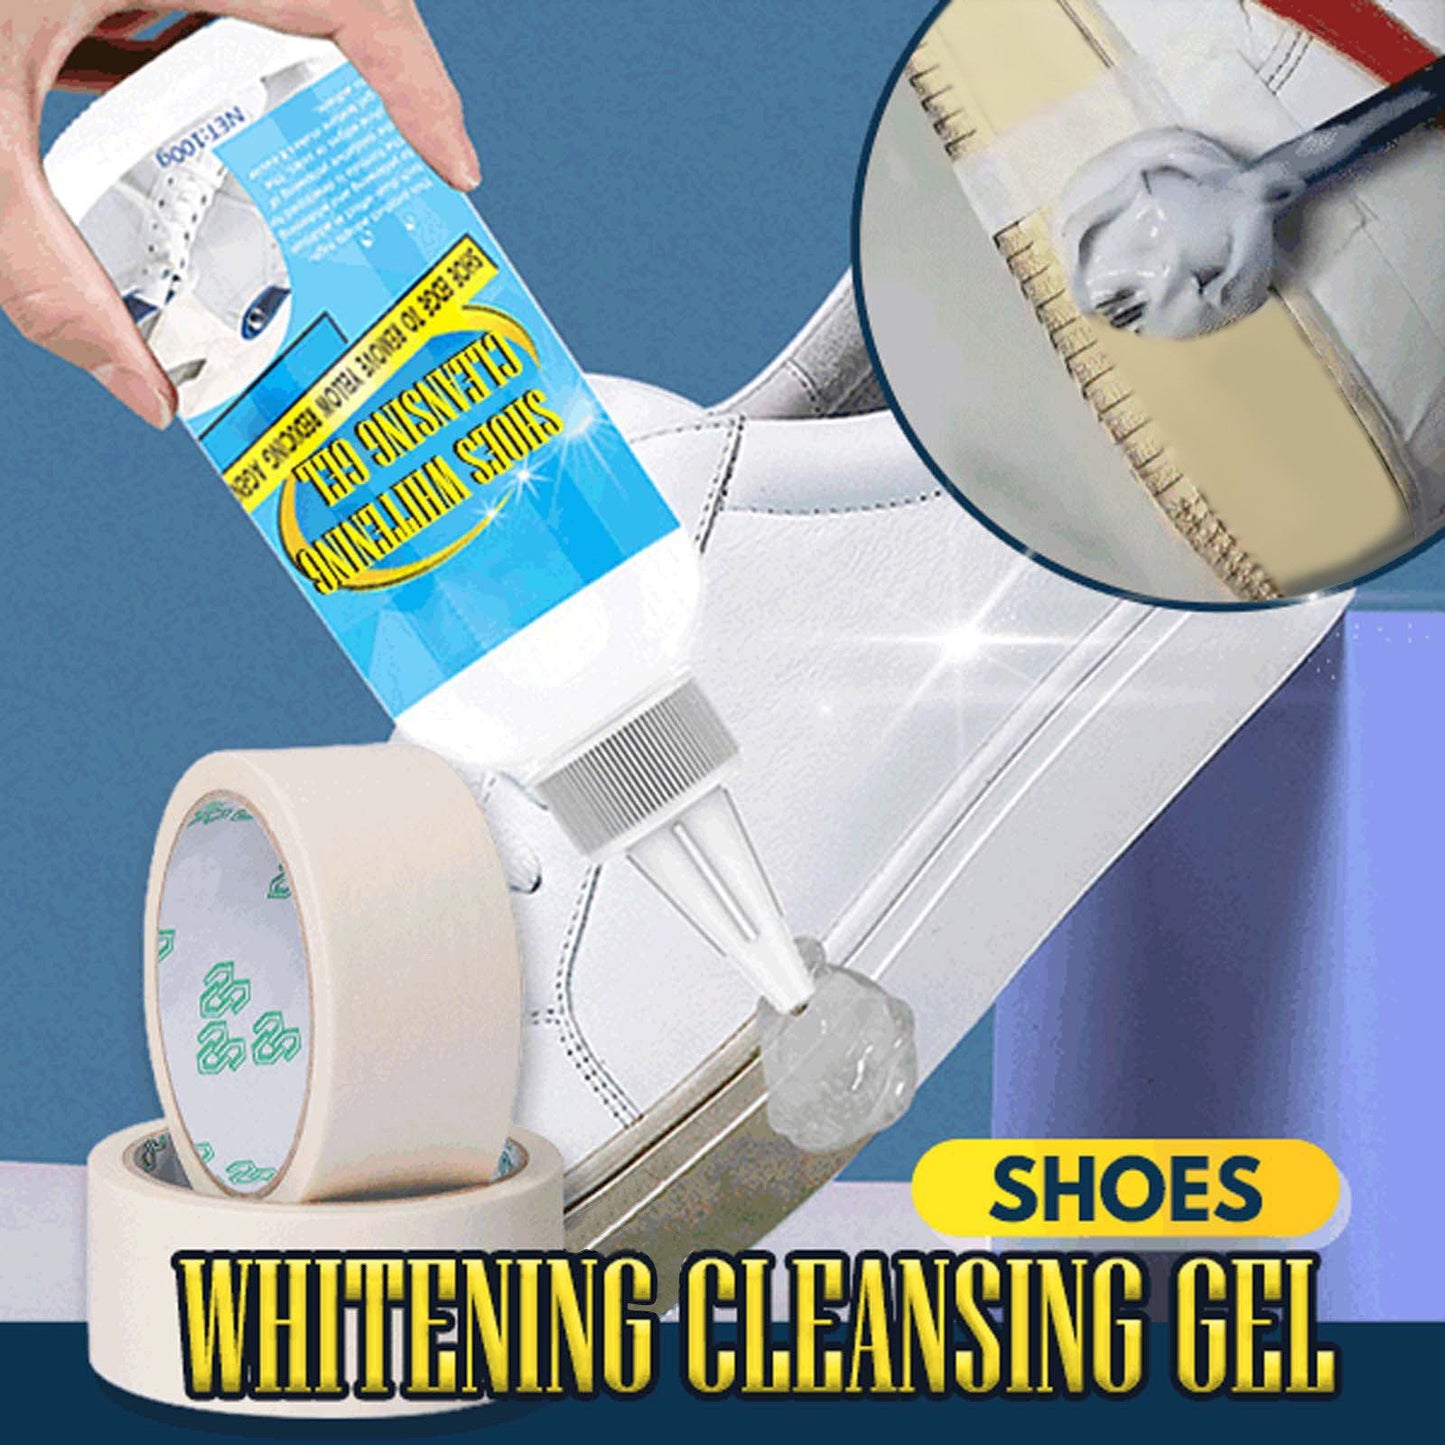 CleanKicks | Wittere schoenzolen in een handomdraai (1+1 GRATIS)